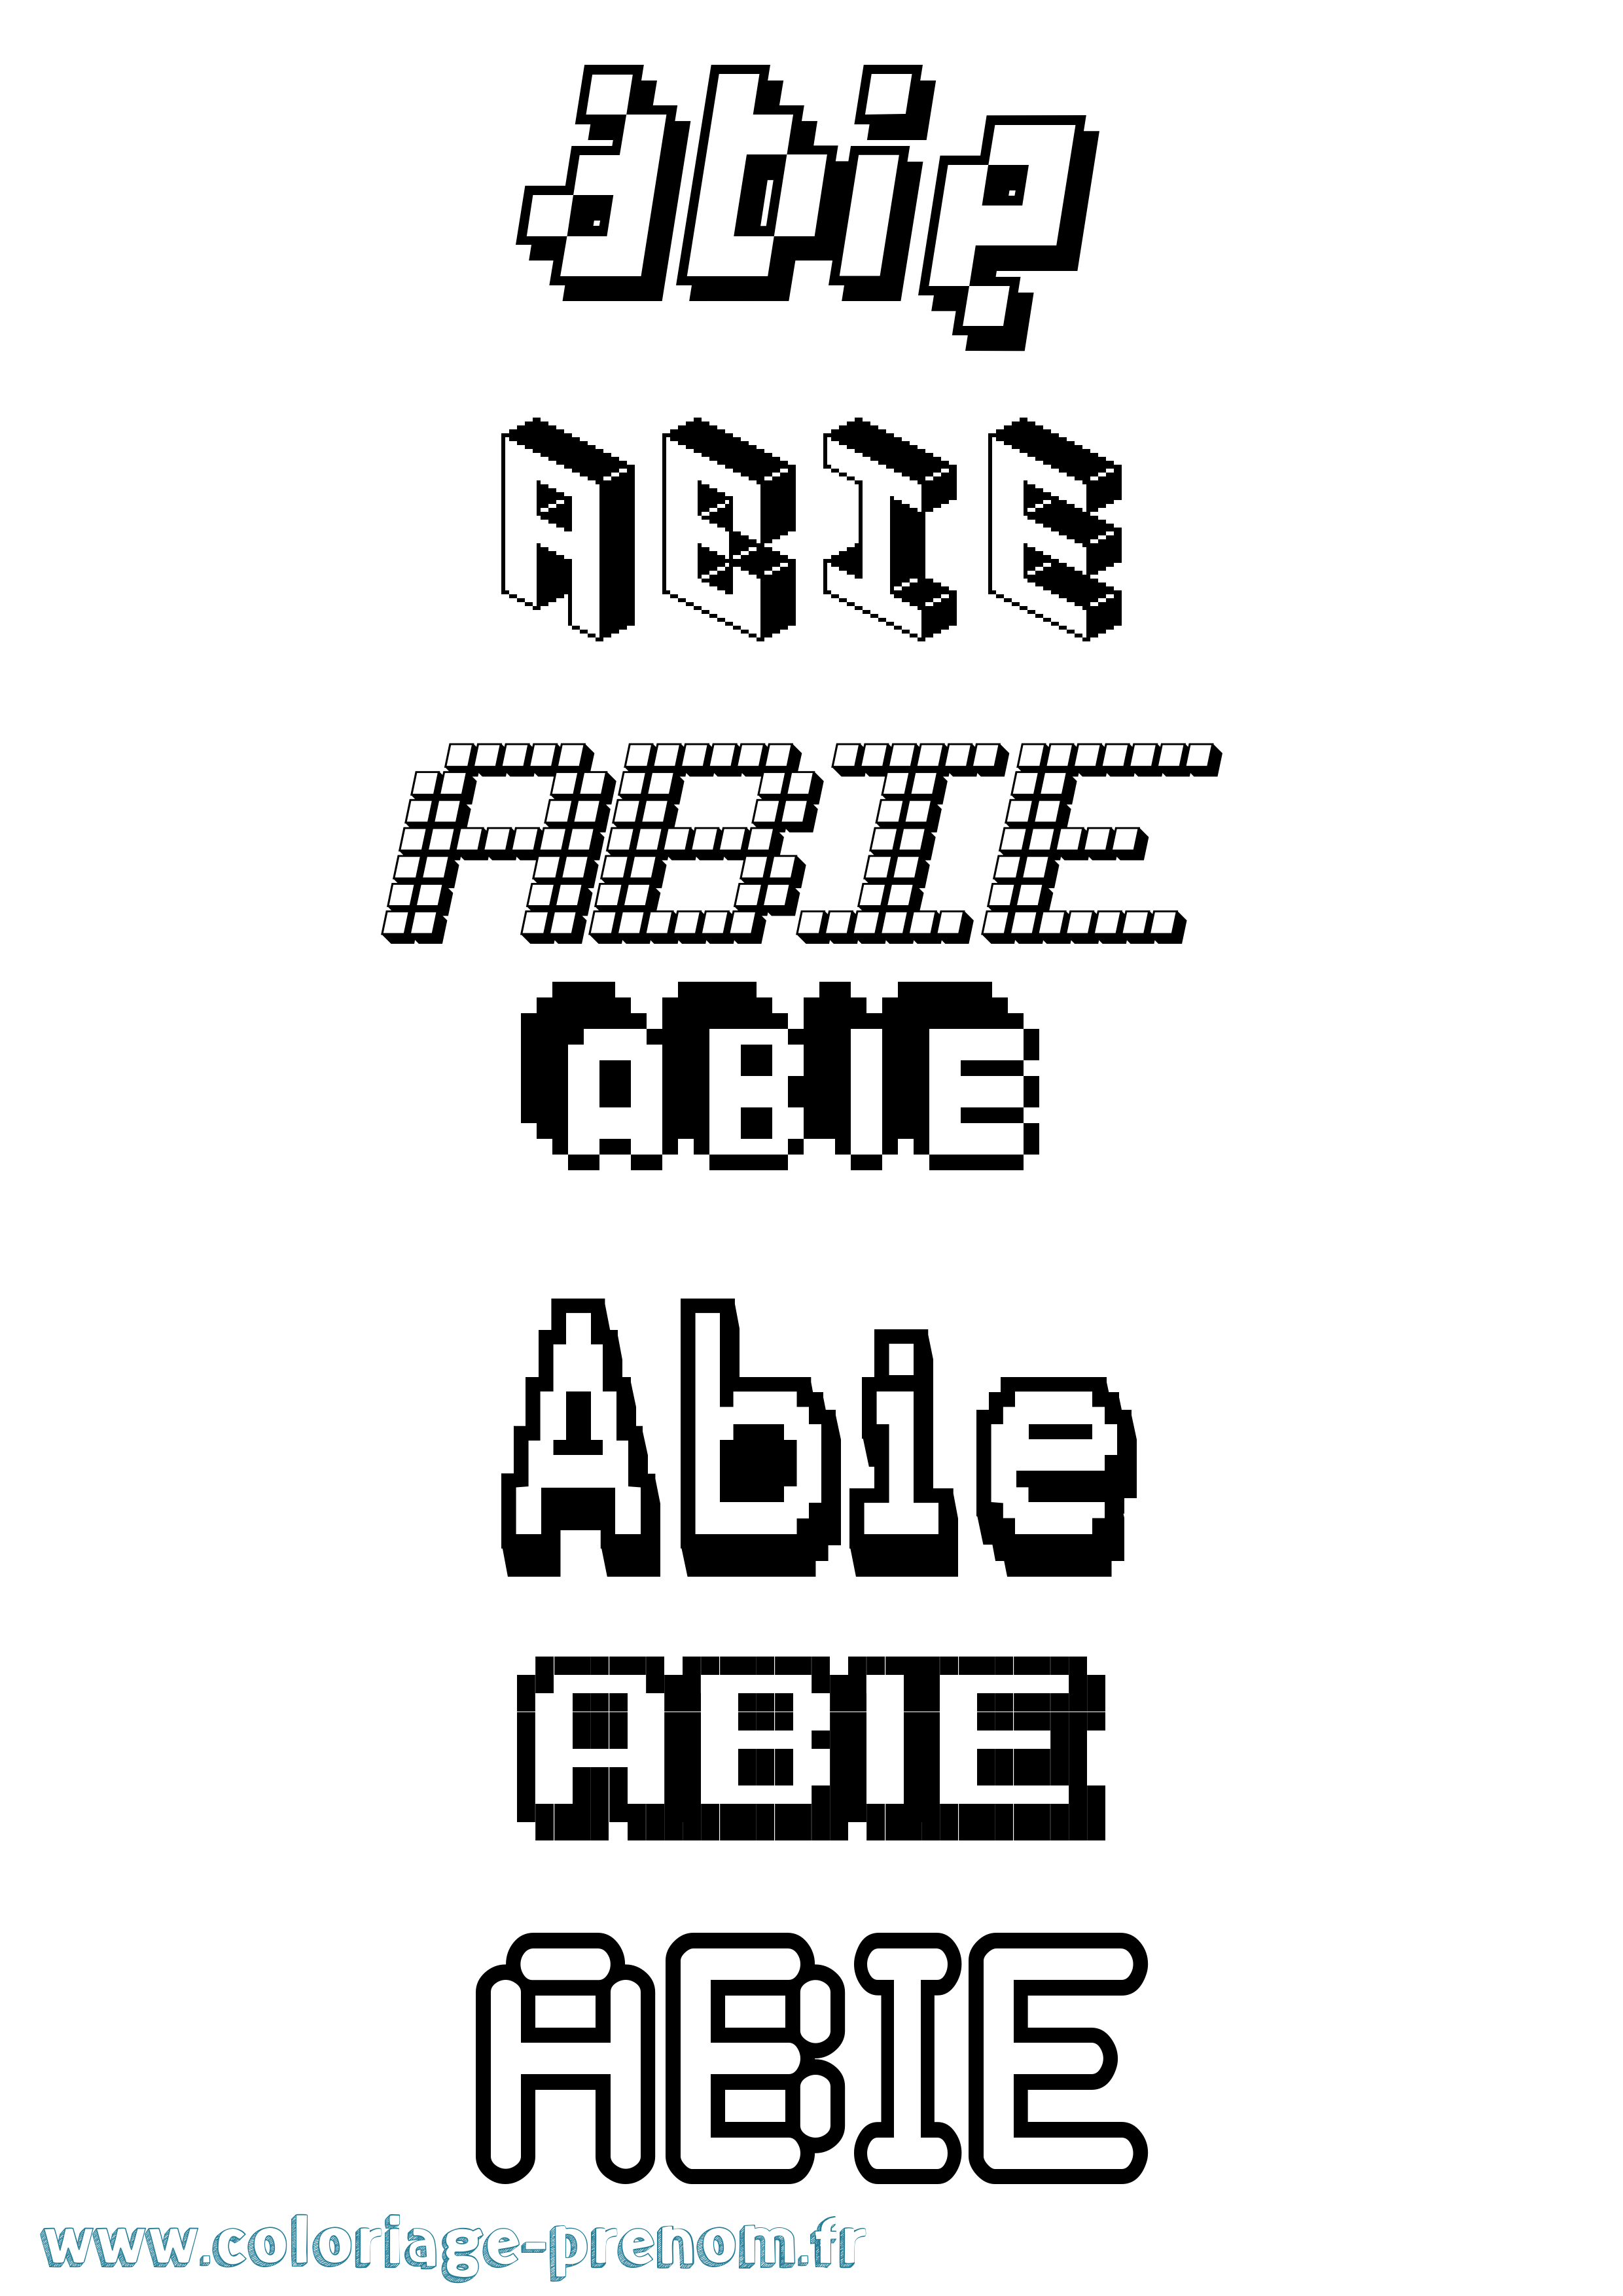 Coloriage prénom Abie Pixel